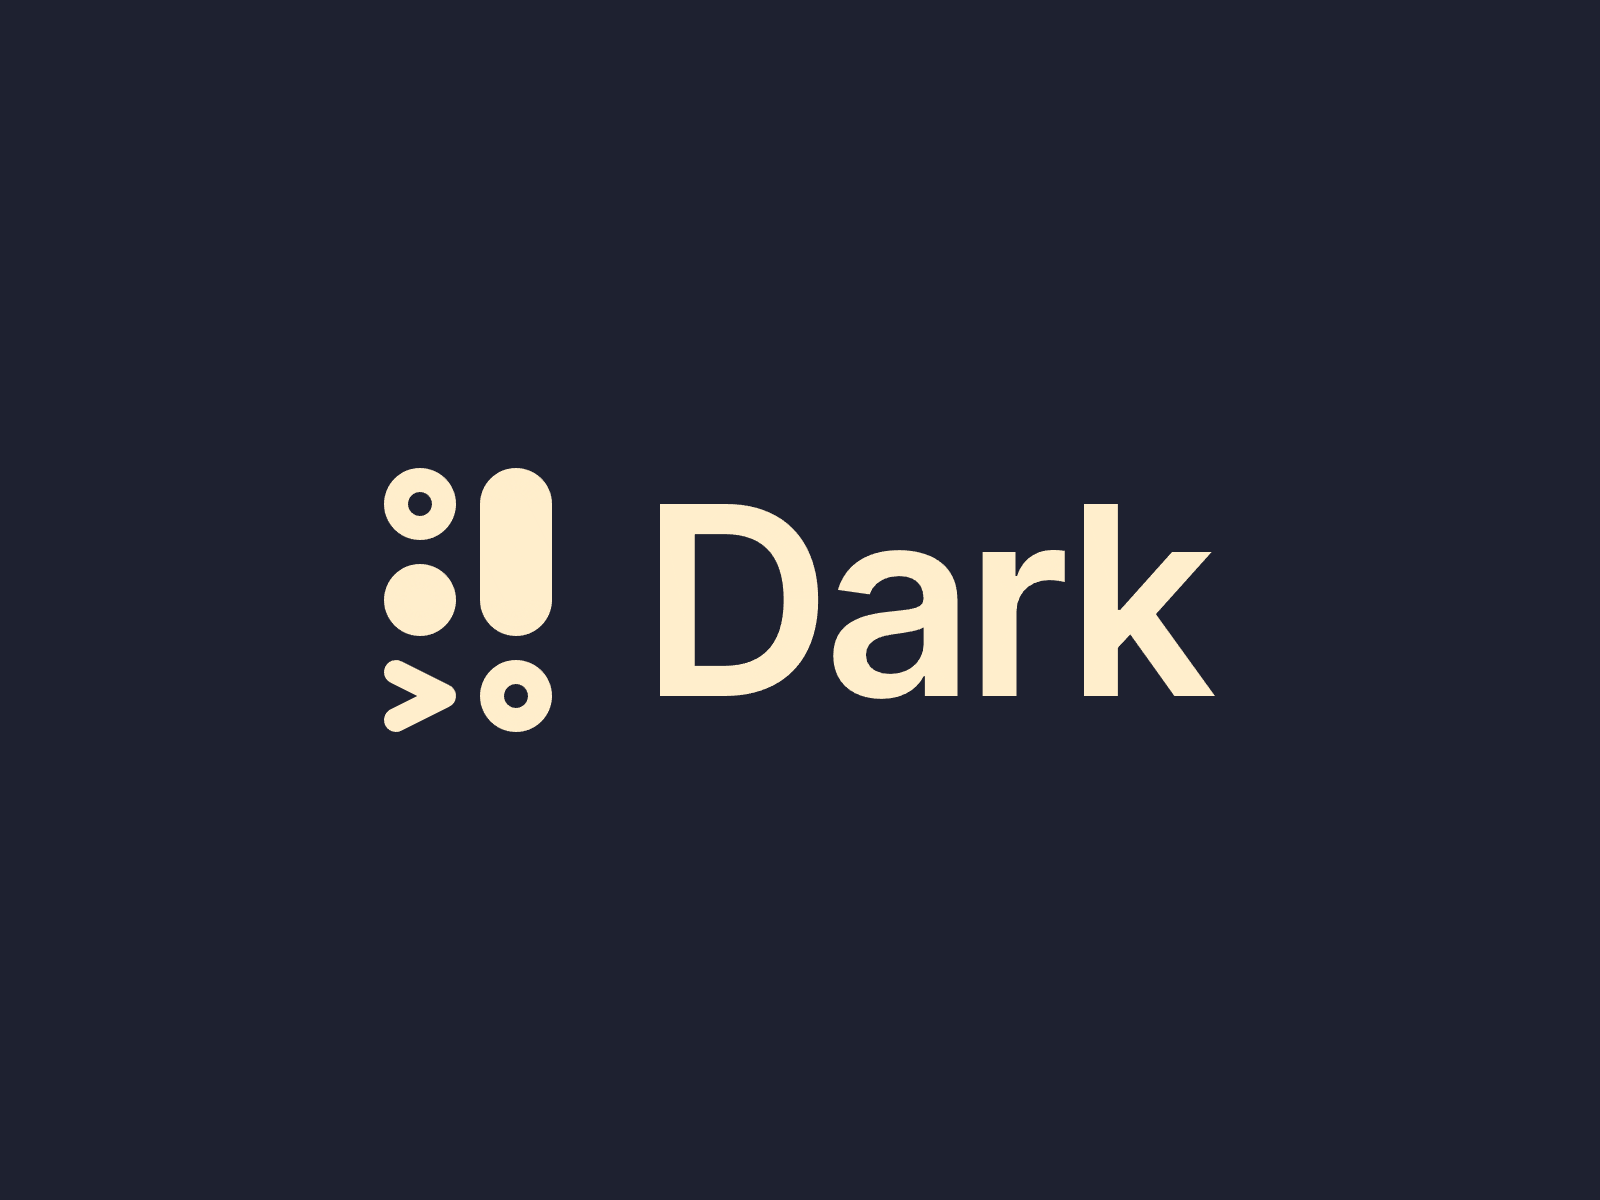 Dark — logo redesign